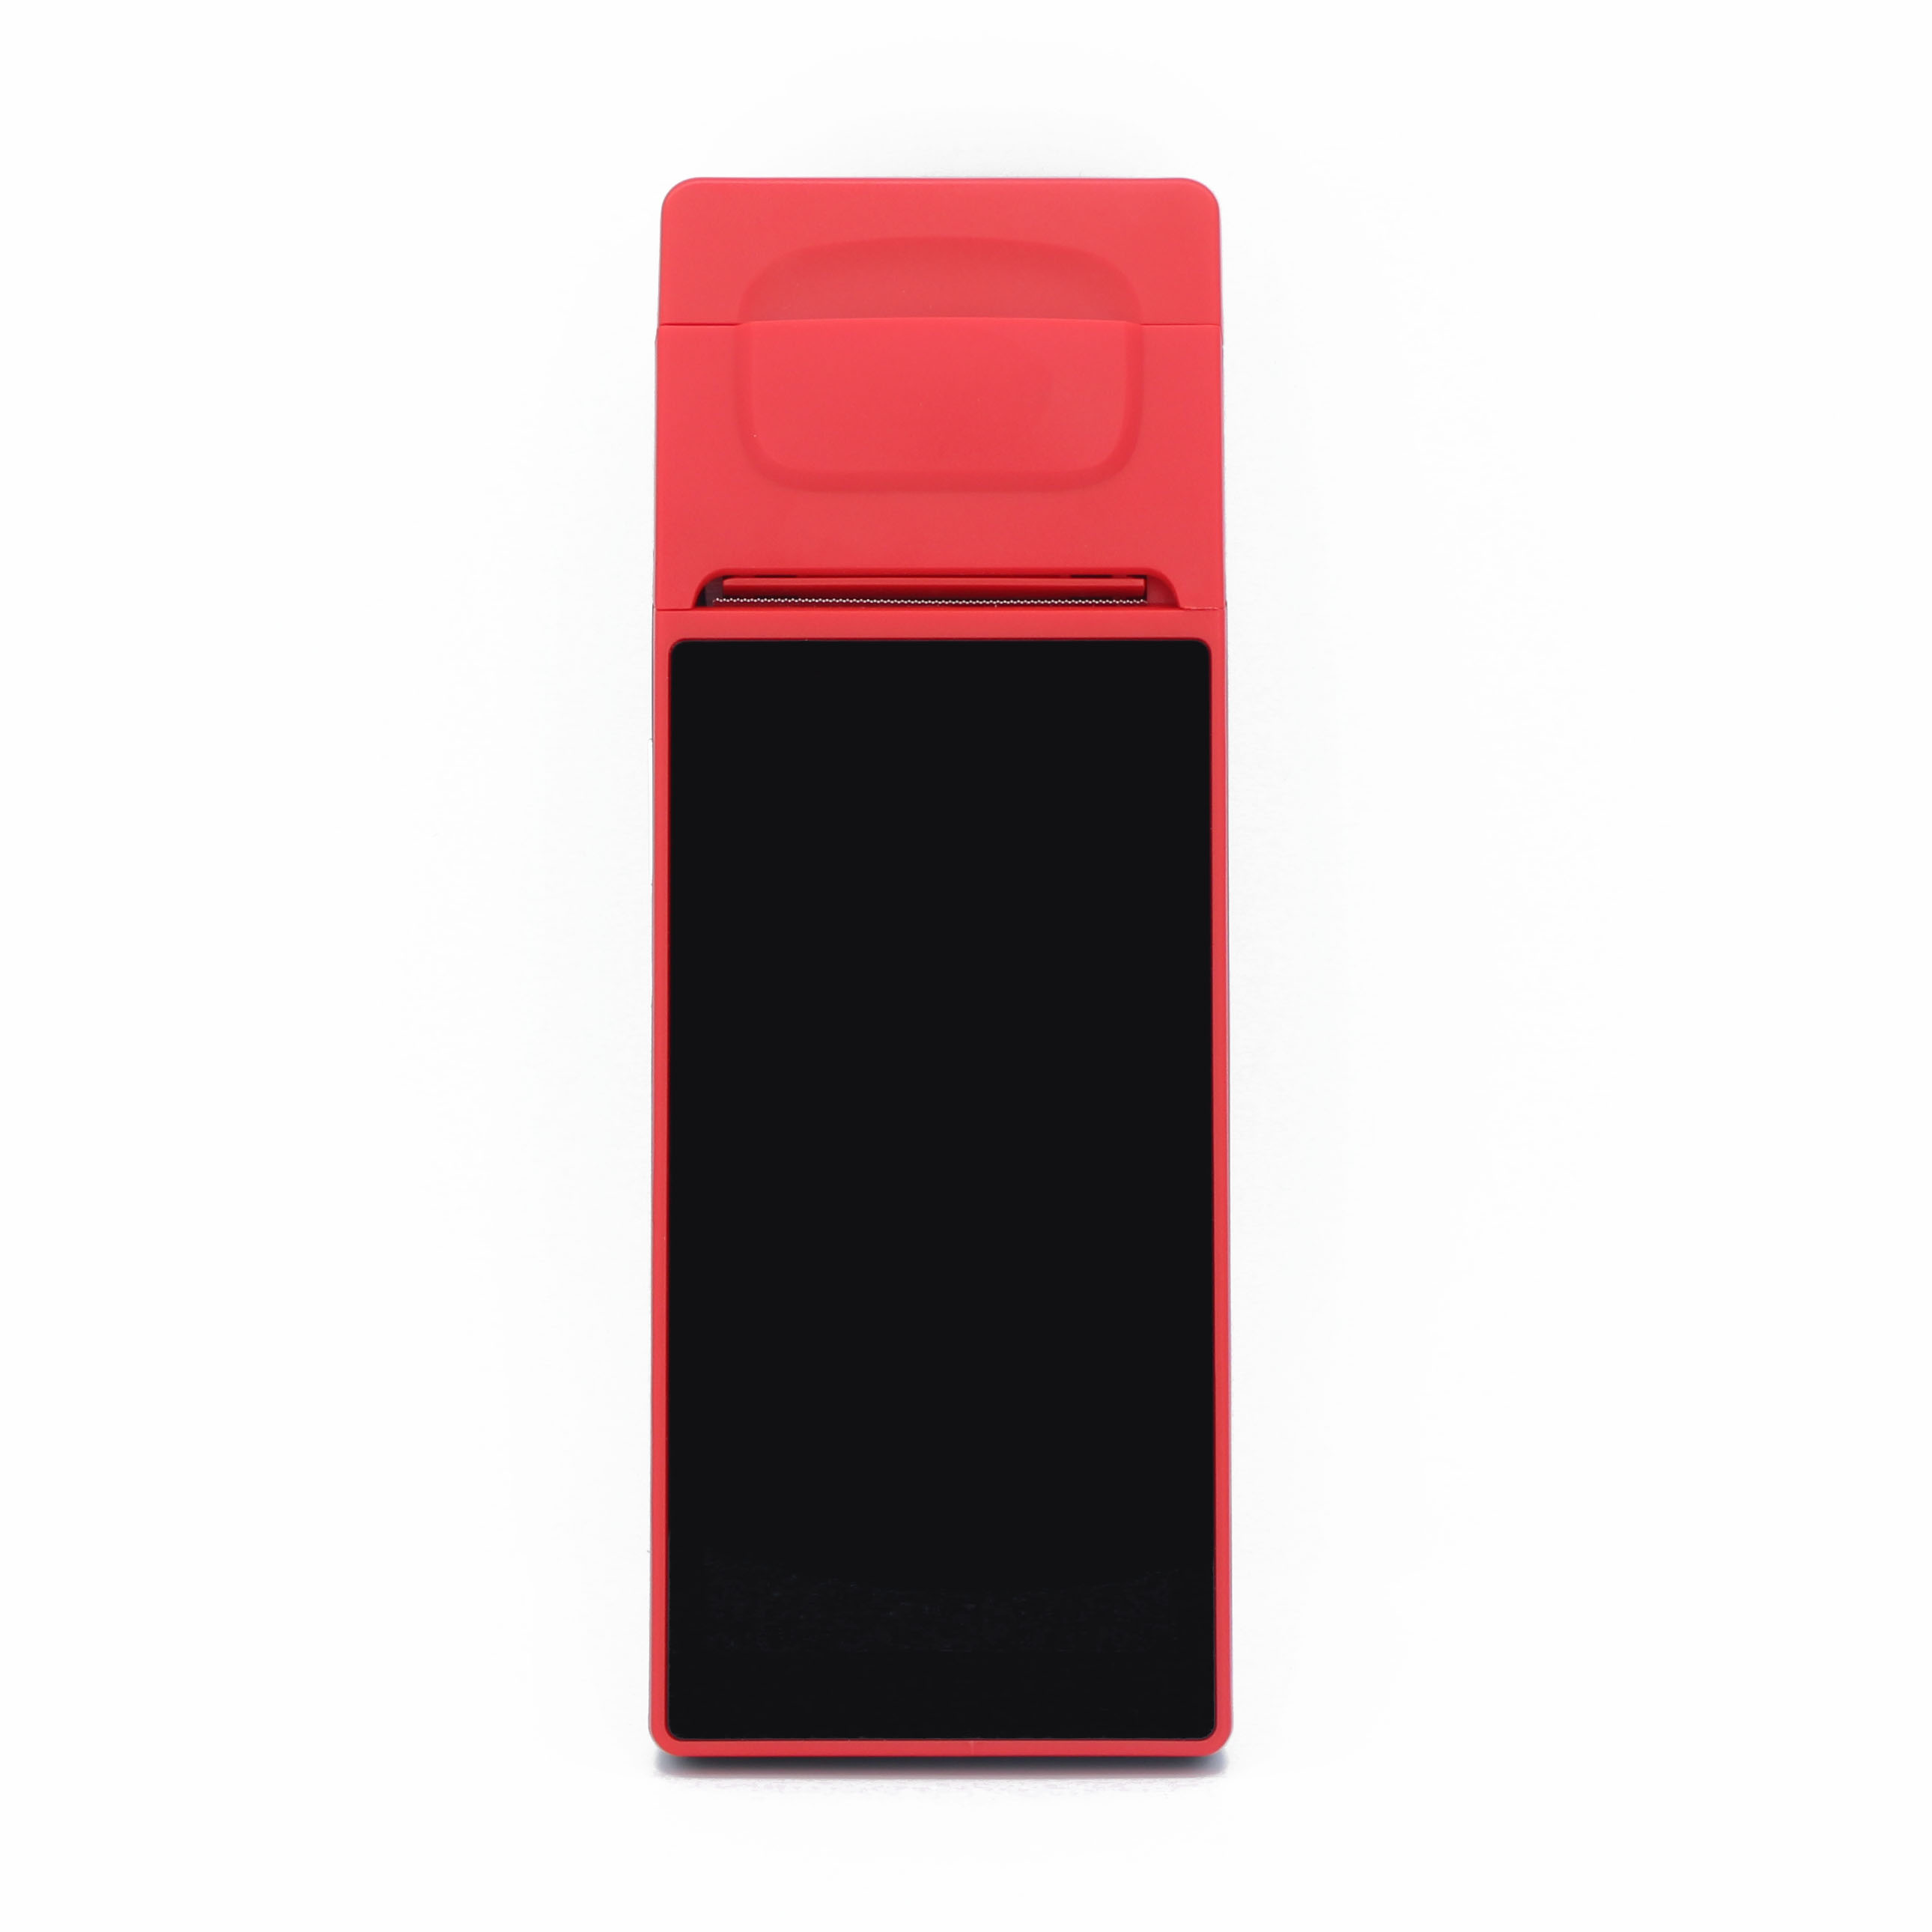 Terminal de point de vente Android portable à écran tactile de 6 pouces avec imprimante pour le stationnement de voiture
